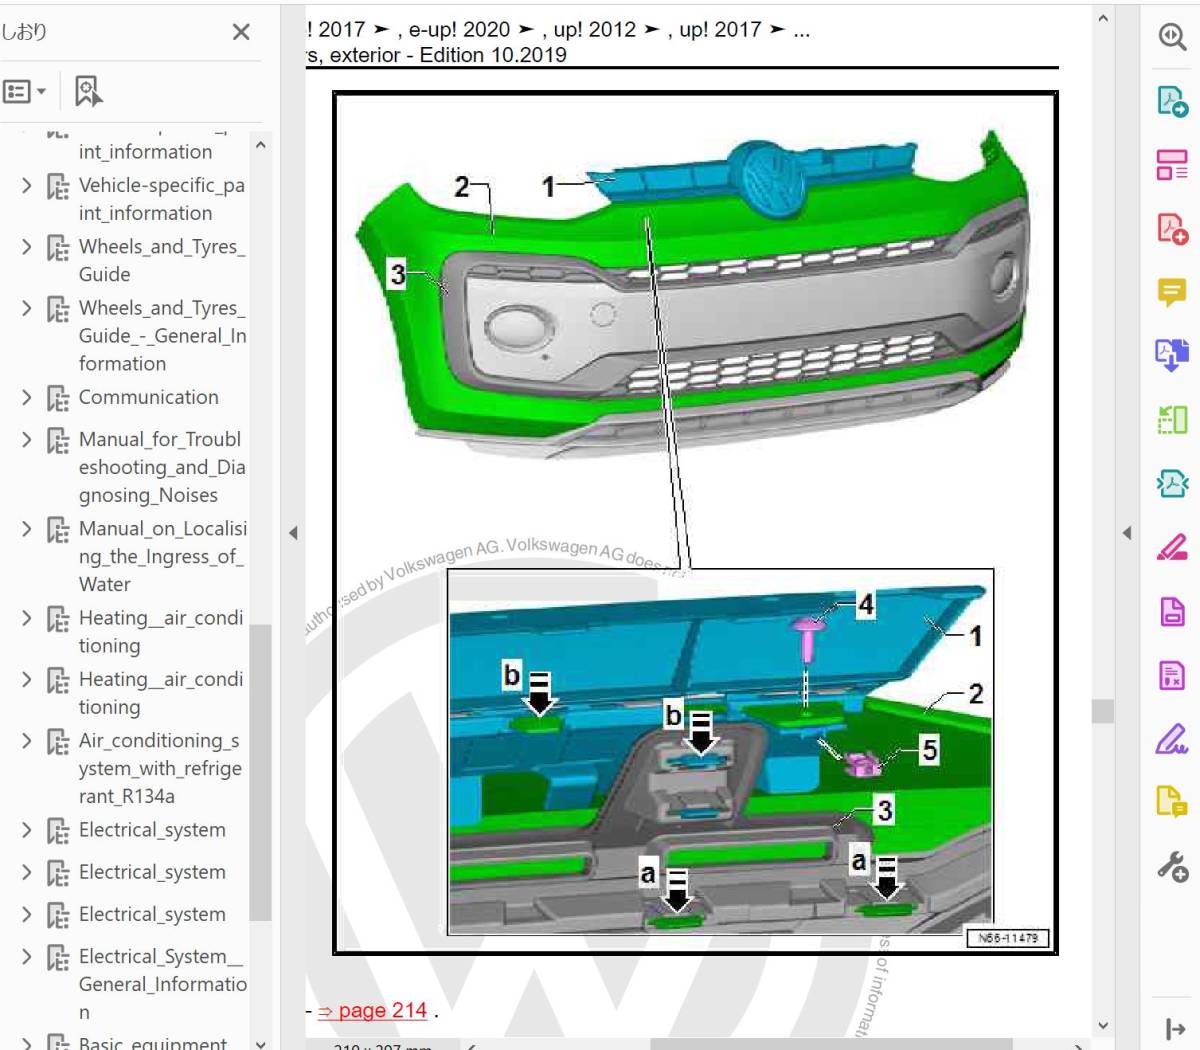 up! UP & eUP 2012 - 2020ワークショップマニュアル サービスリペアマニュアル 整備書 配線図 フォルクスワーゲン VW の画像7